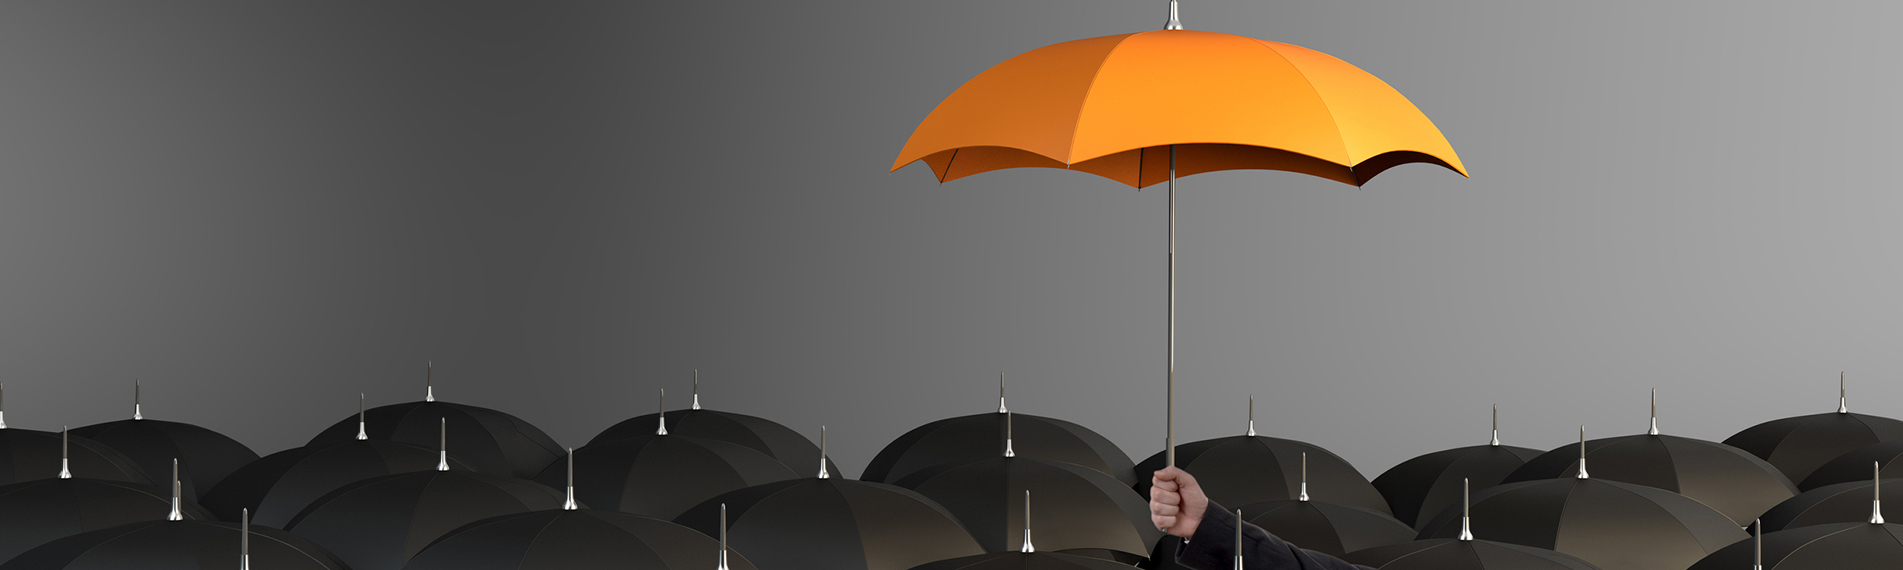 California Umbrella Insurance Coverage